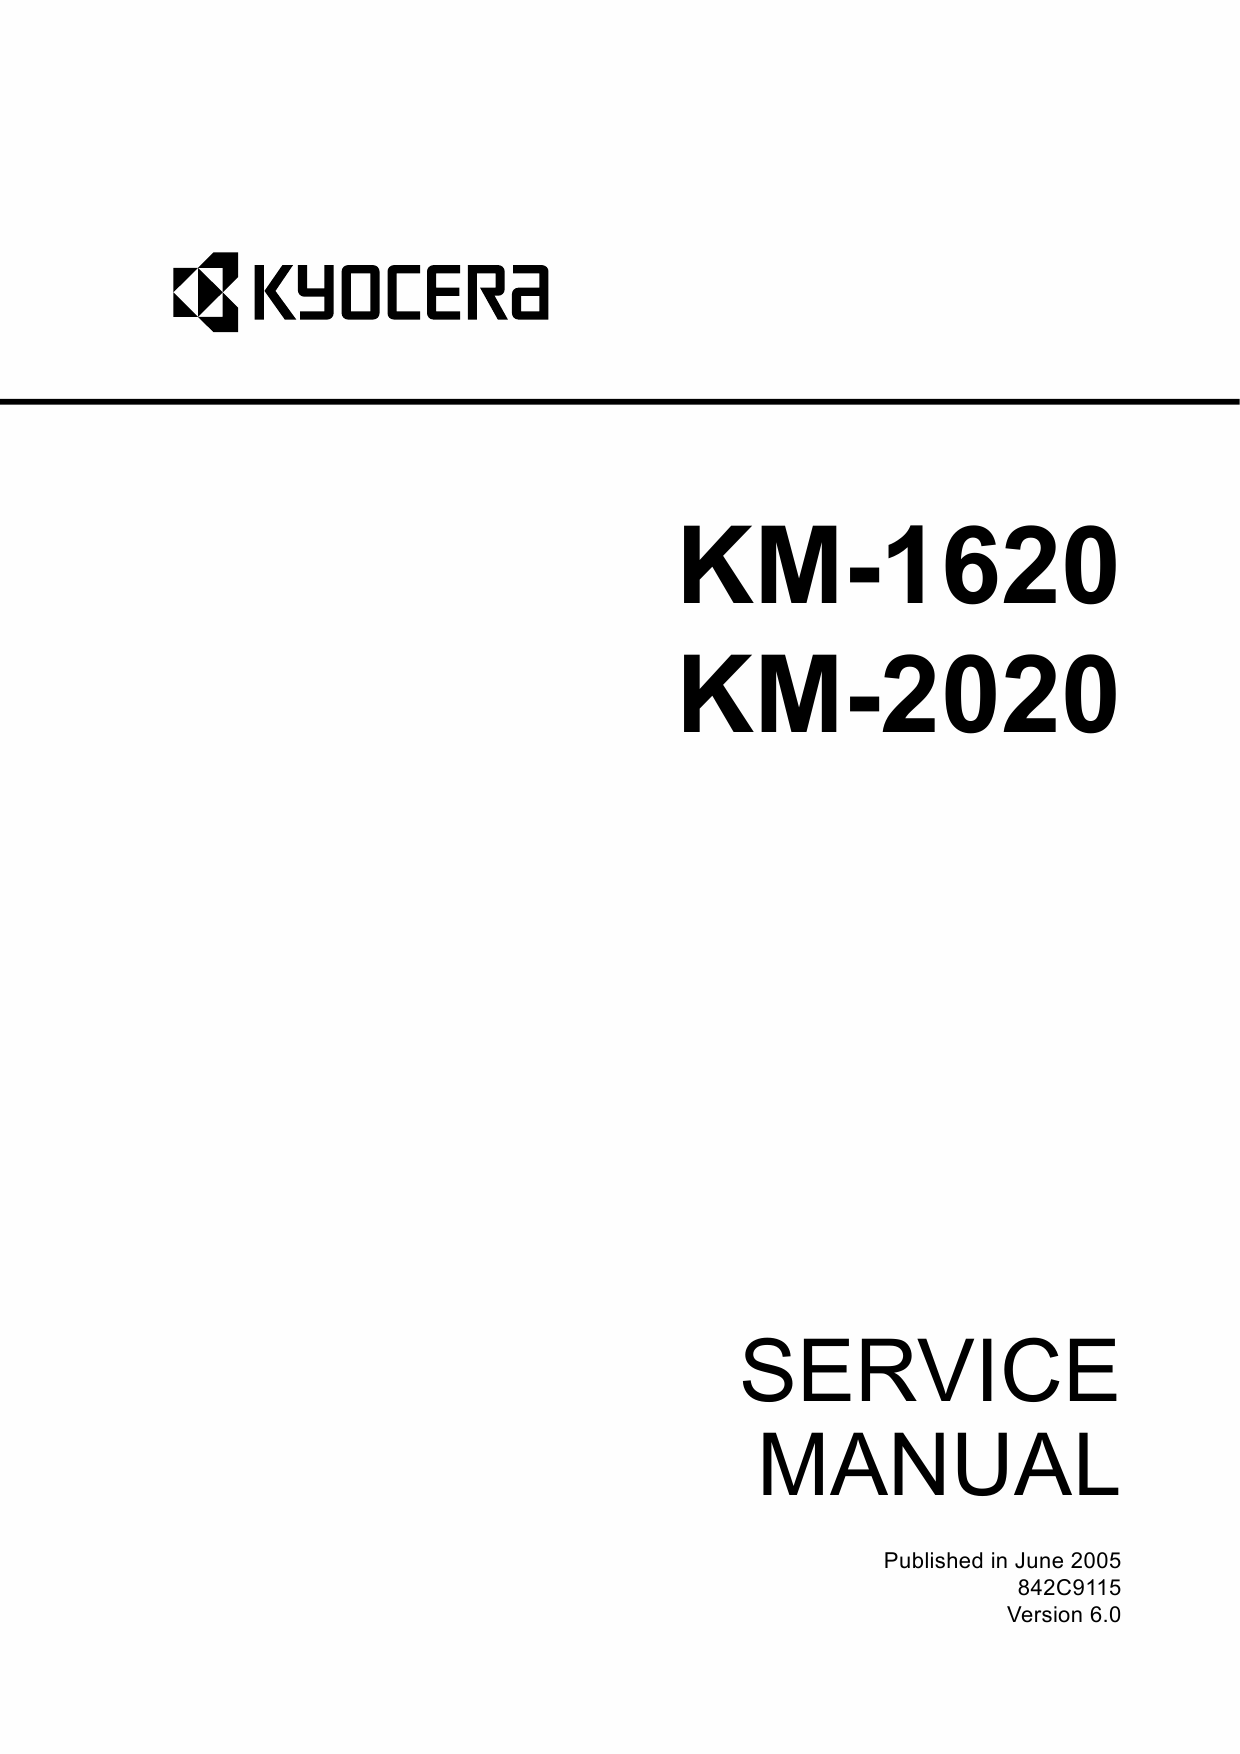 KYOCERA Copier KM-1620 2020 Service Manual-1